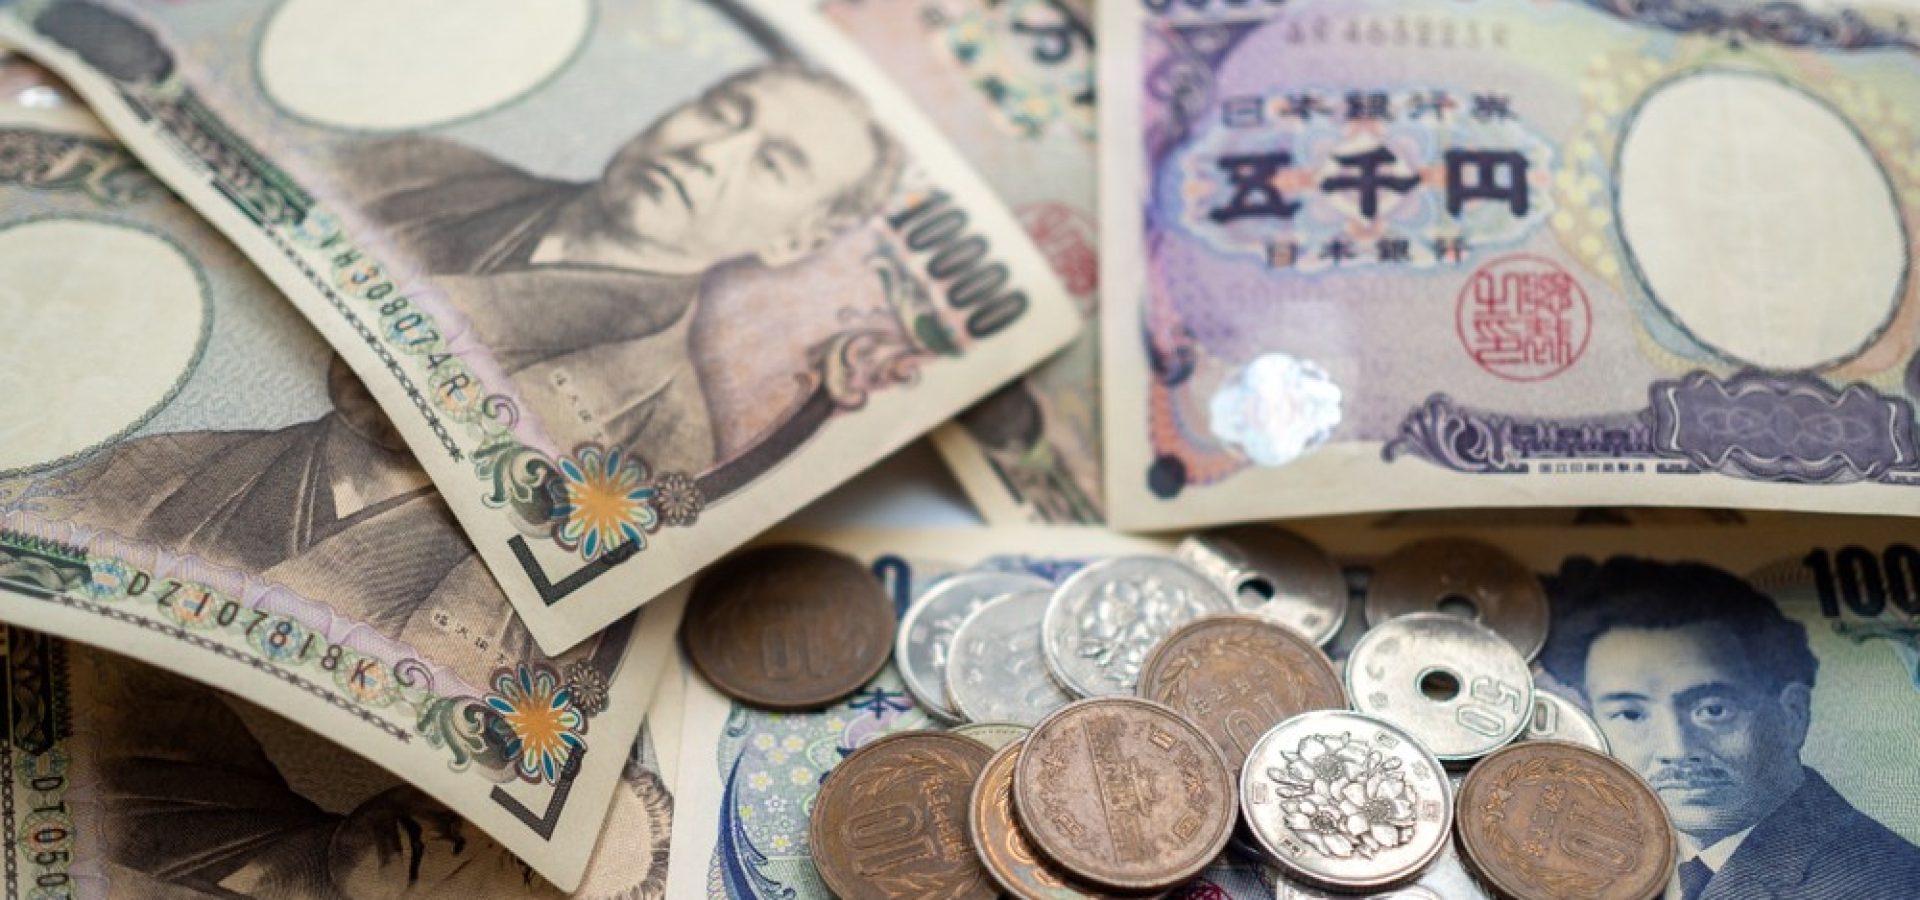 Wibest – Yen exchange rate: Japanese yen bills and coins.